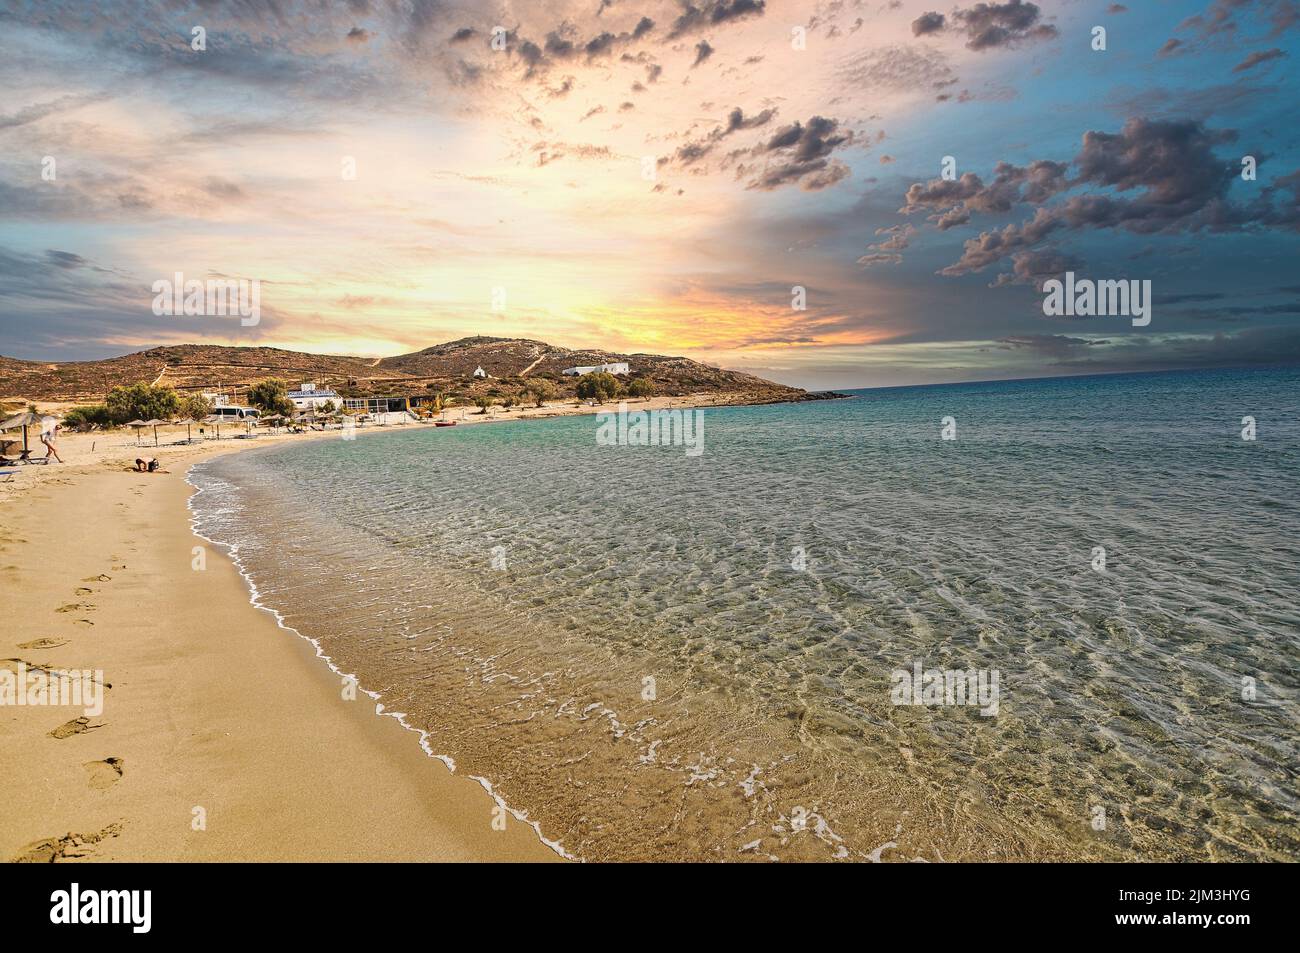 Griechenland, Insel iOS. 19. September 2010: Der berühmte Strand von Manganari auf der kykladischen Insel iOS in Griechenland Stockfoto